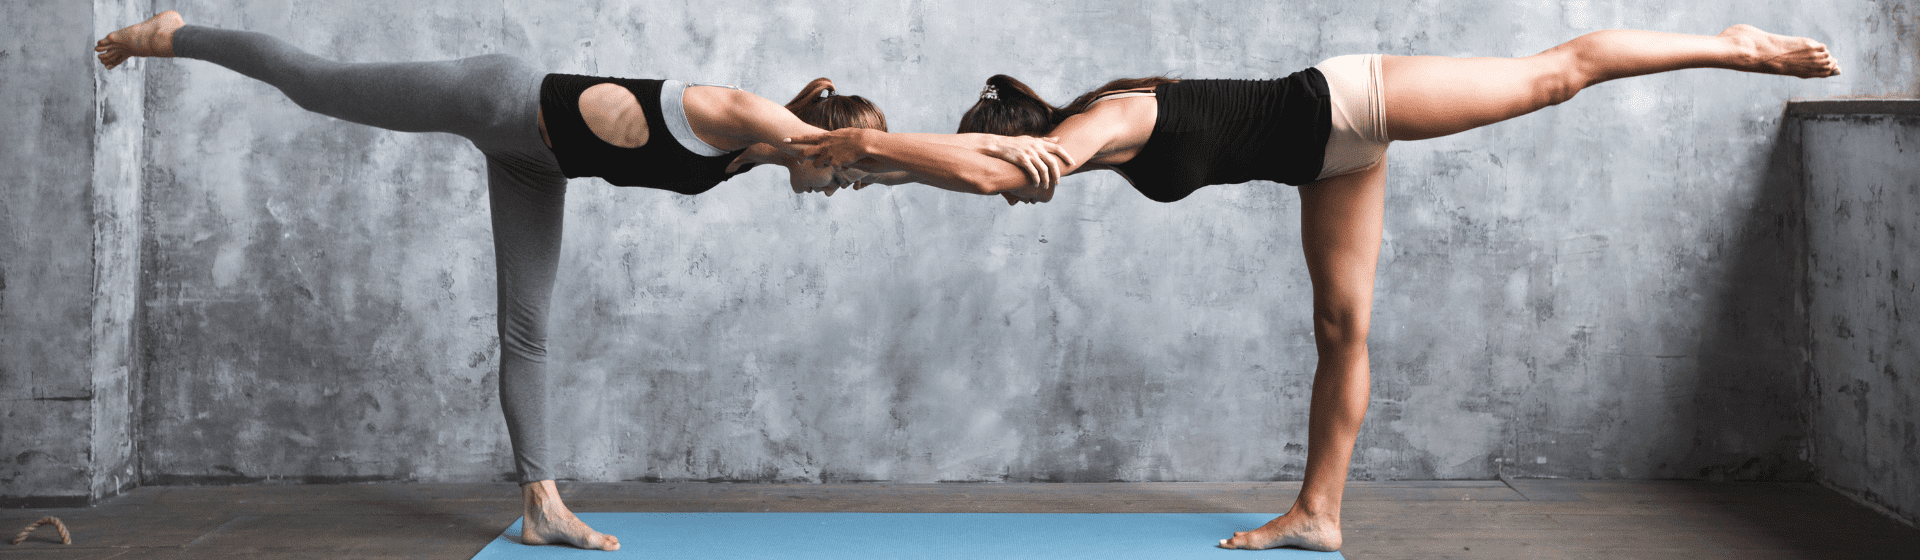 Yoga em dupla: 5 posturas de yoga para praticar em dupla